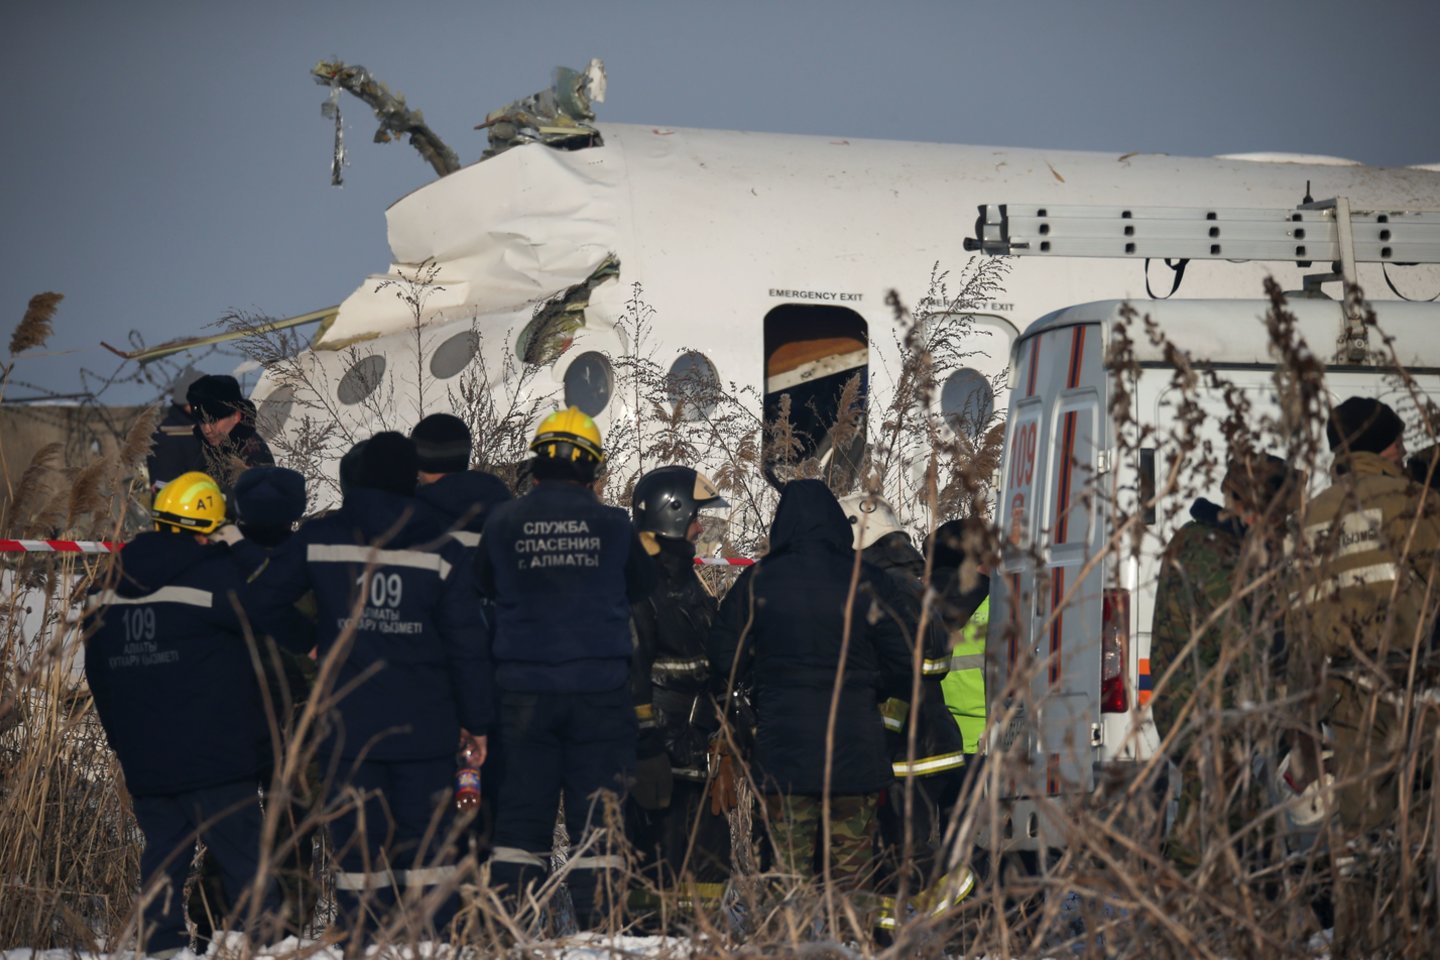 Ankstyvą penktadienio rytą Kazachstane sudužusio oro linijų „Bek Air“ lėktuvo „Fokker 100“ pilotai rengėsi įprastam skrydžiui ir prieš pakylant nefiksavo nieko neįprasto.<br>Scanpix/Reuters nuotr.